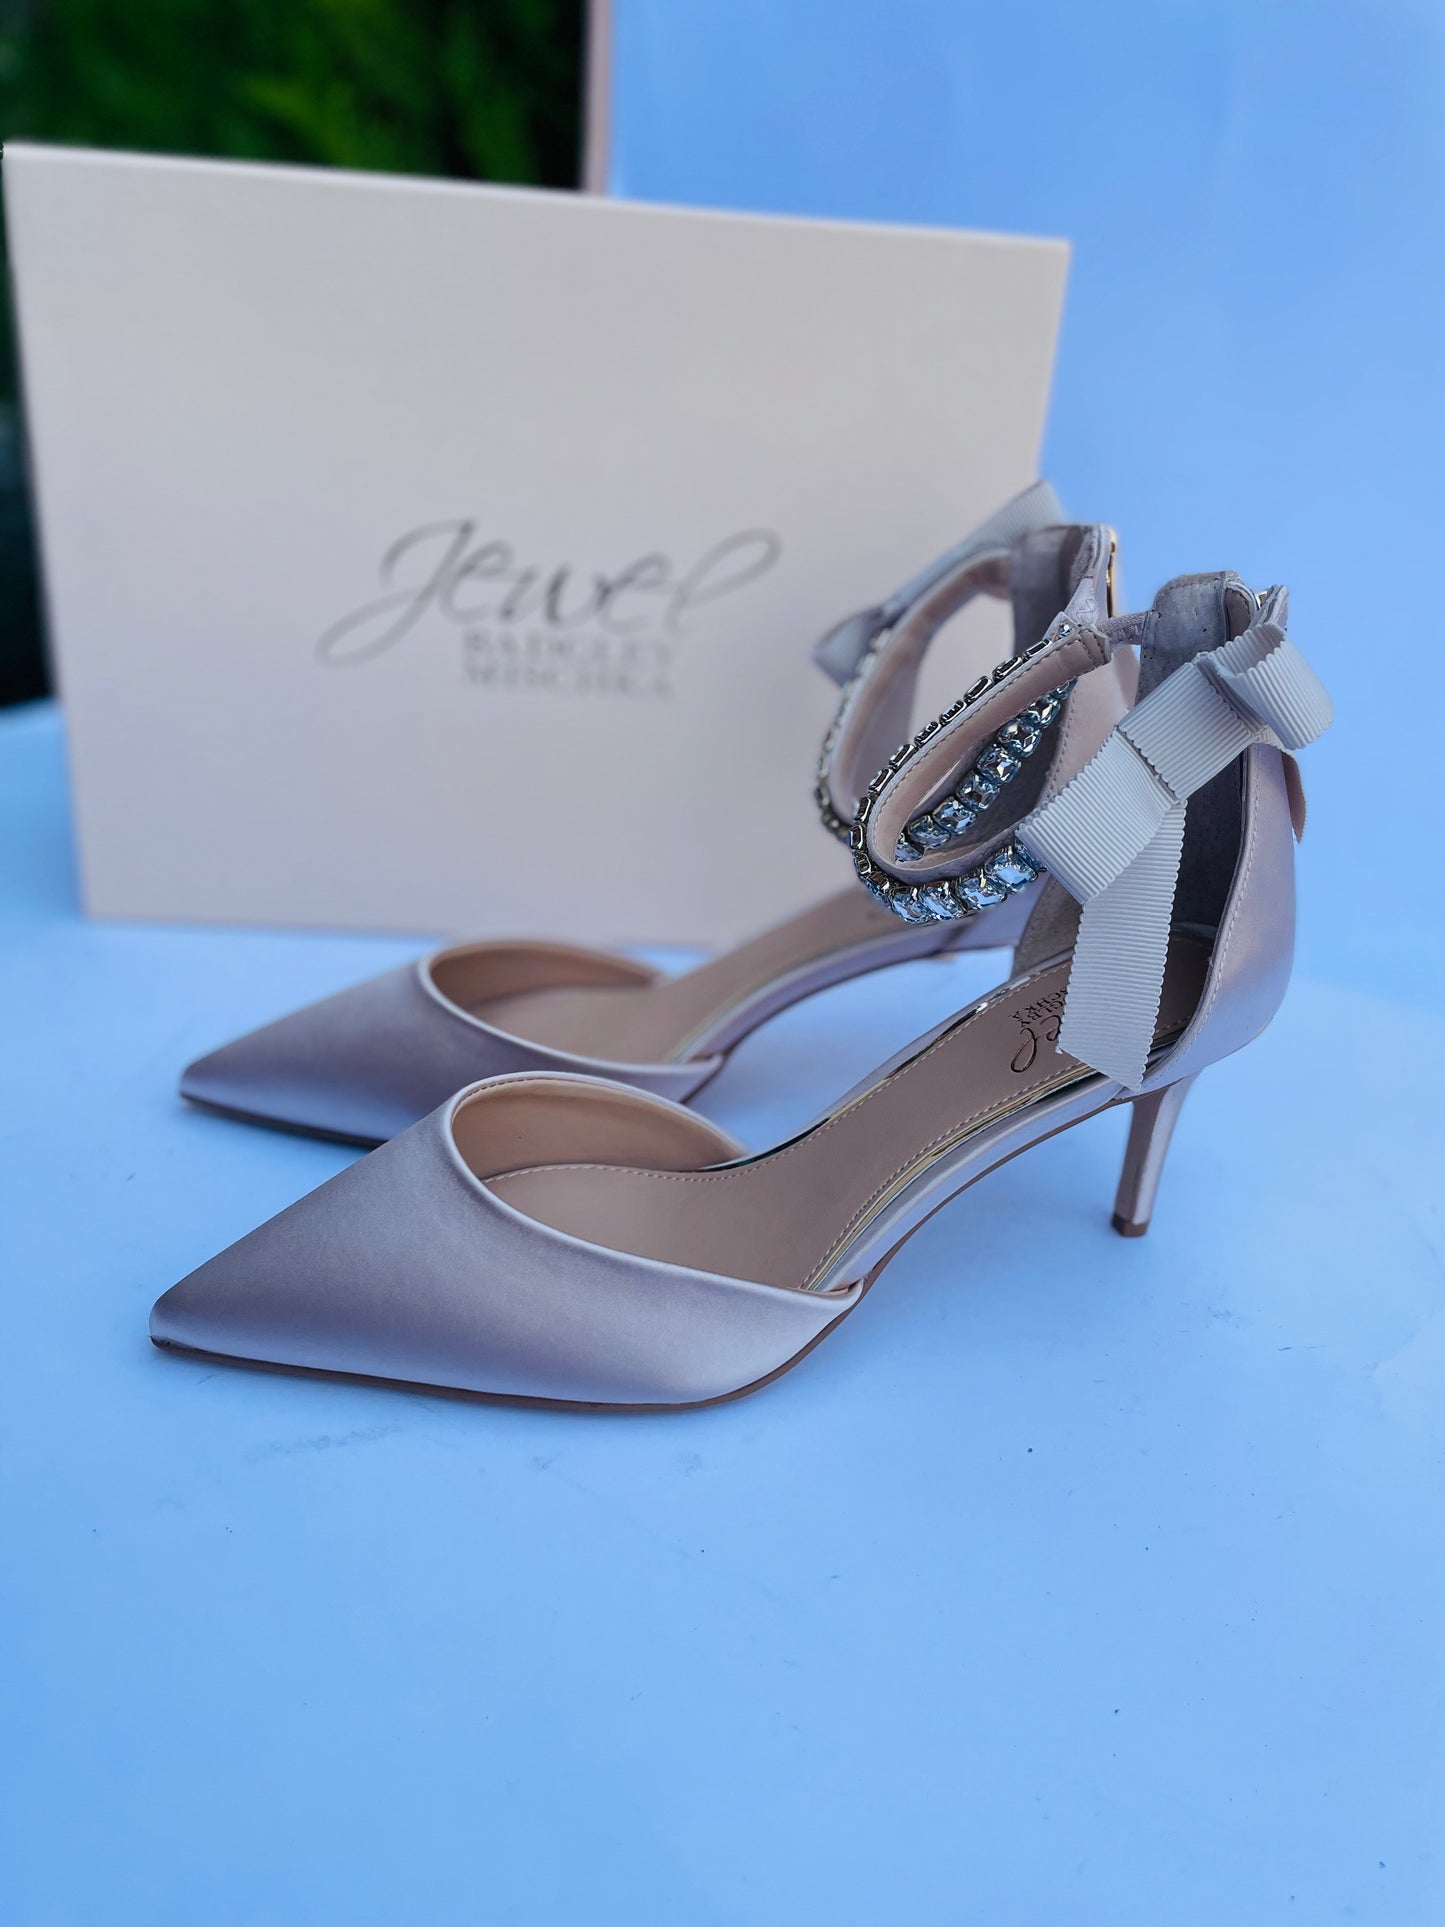 Jewel heels shoes